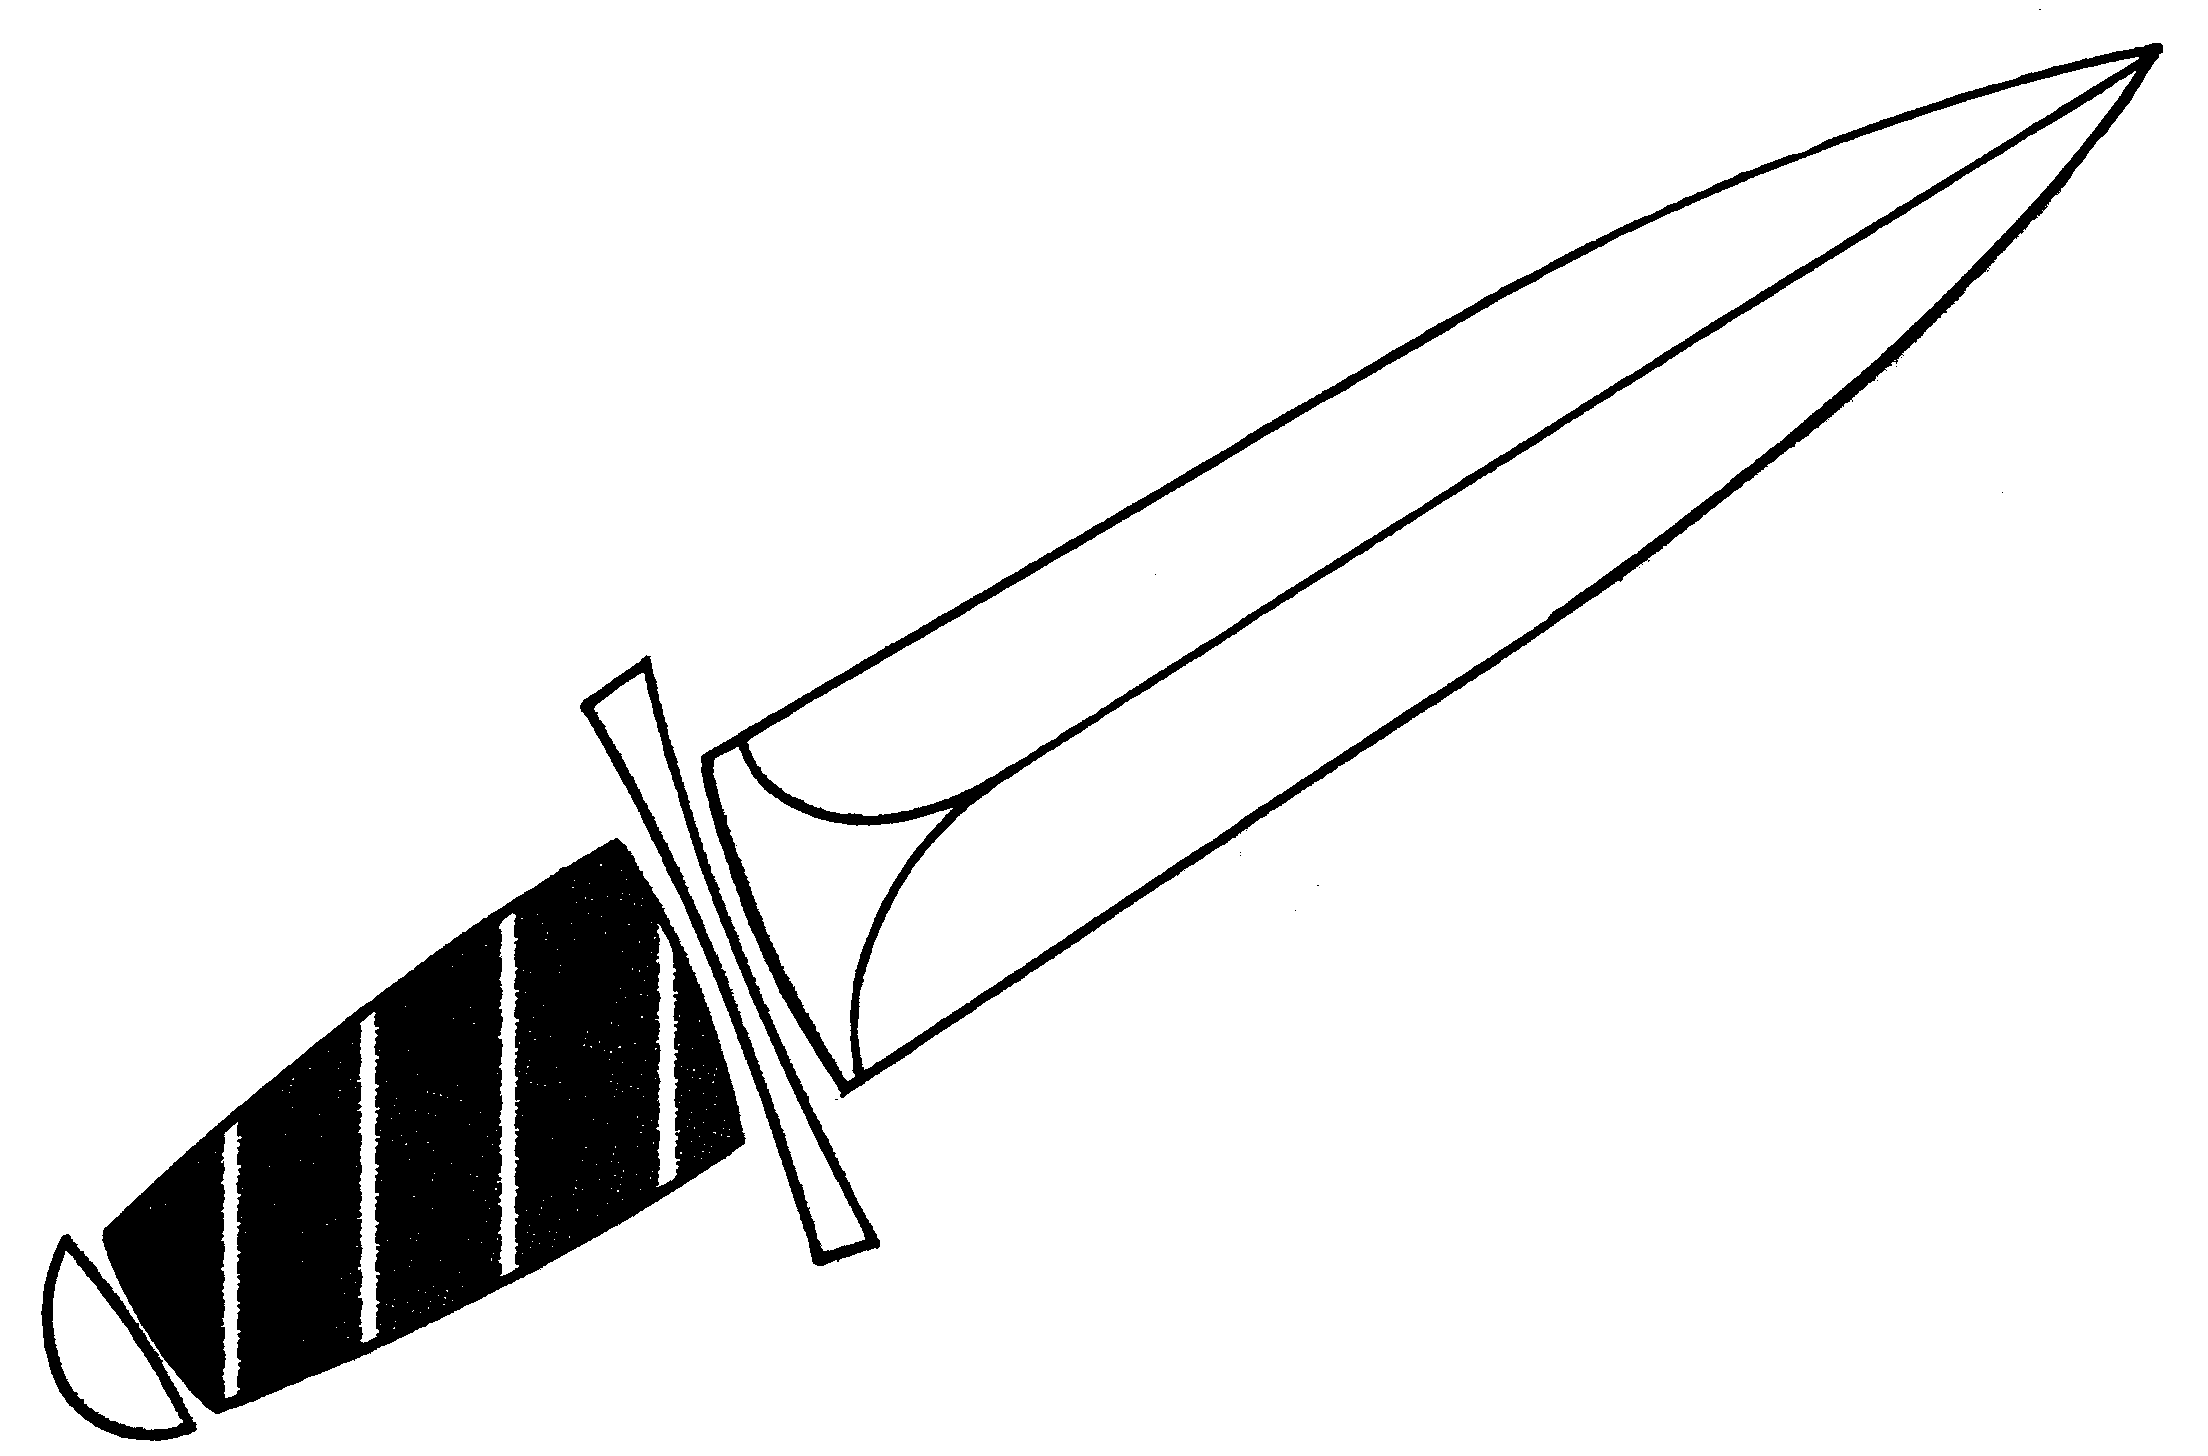 sword clipart